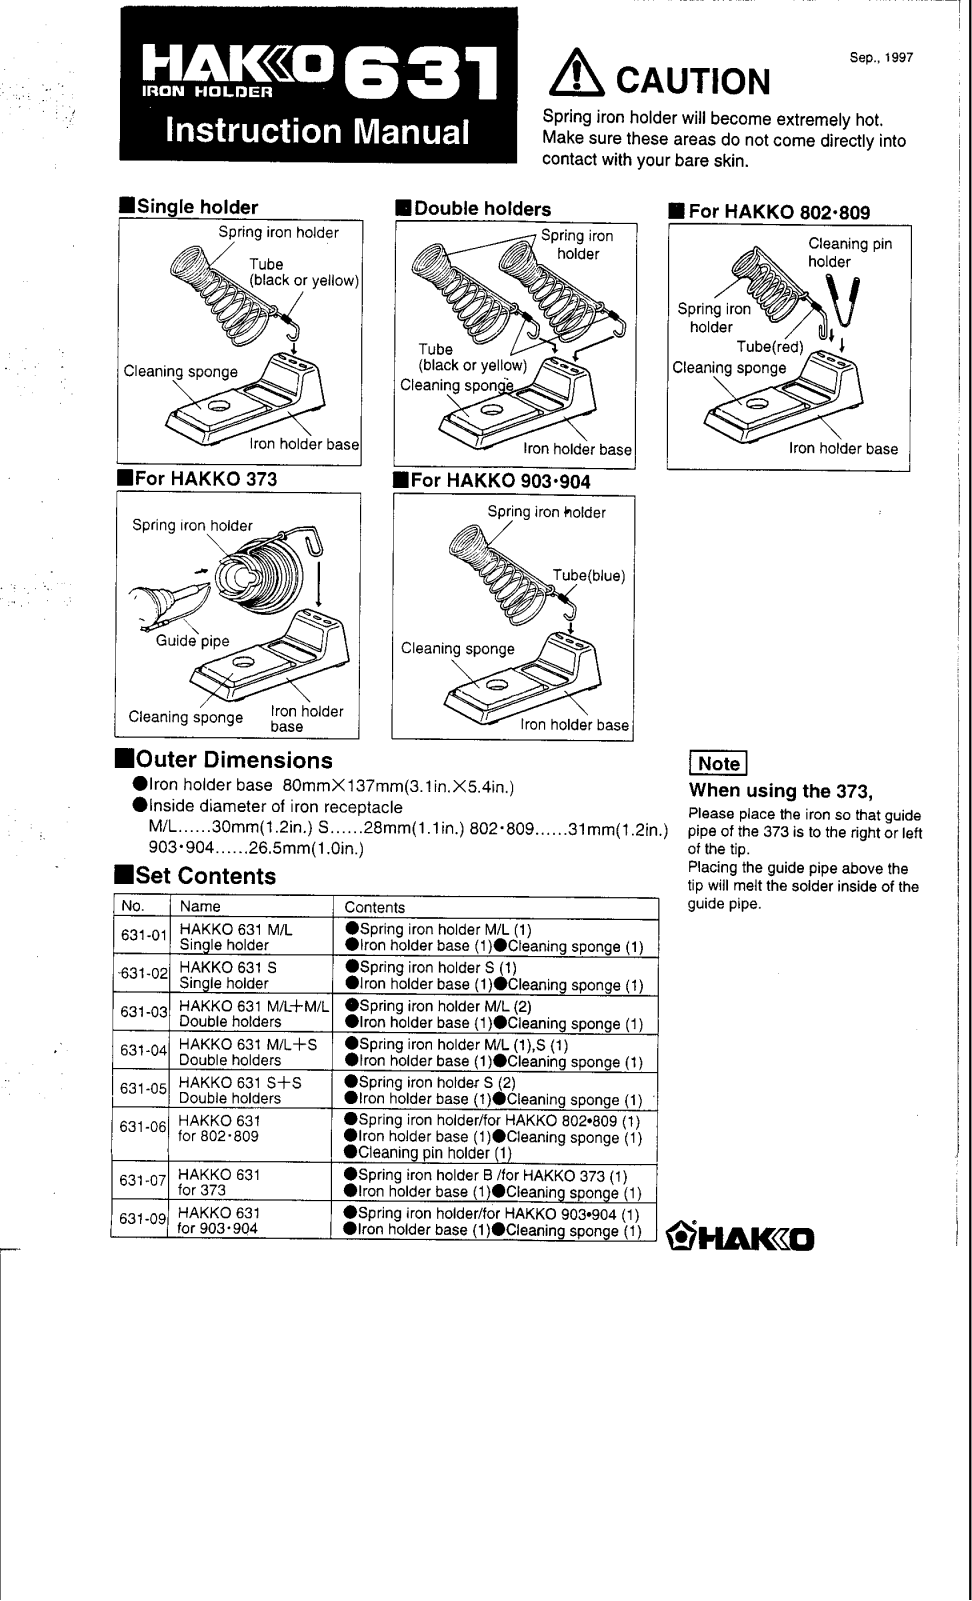 Hakko 631 User Manual